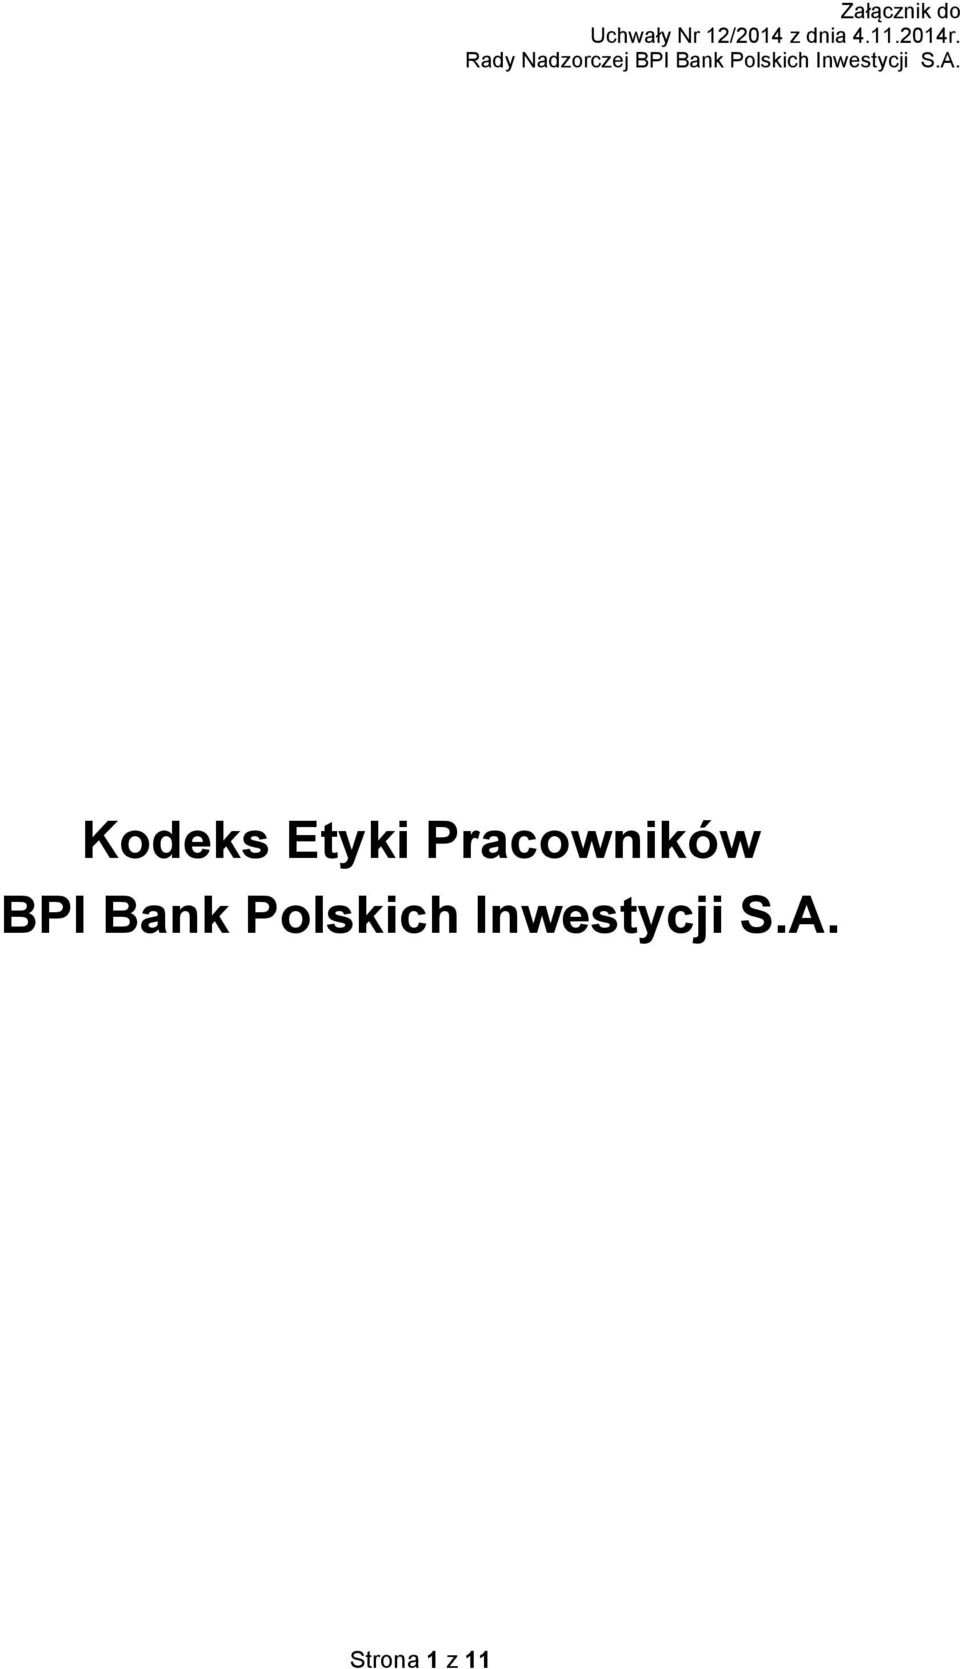 Rady Nadzorczej BPI Bank Polskich